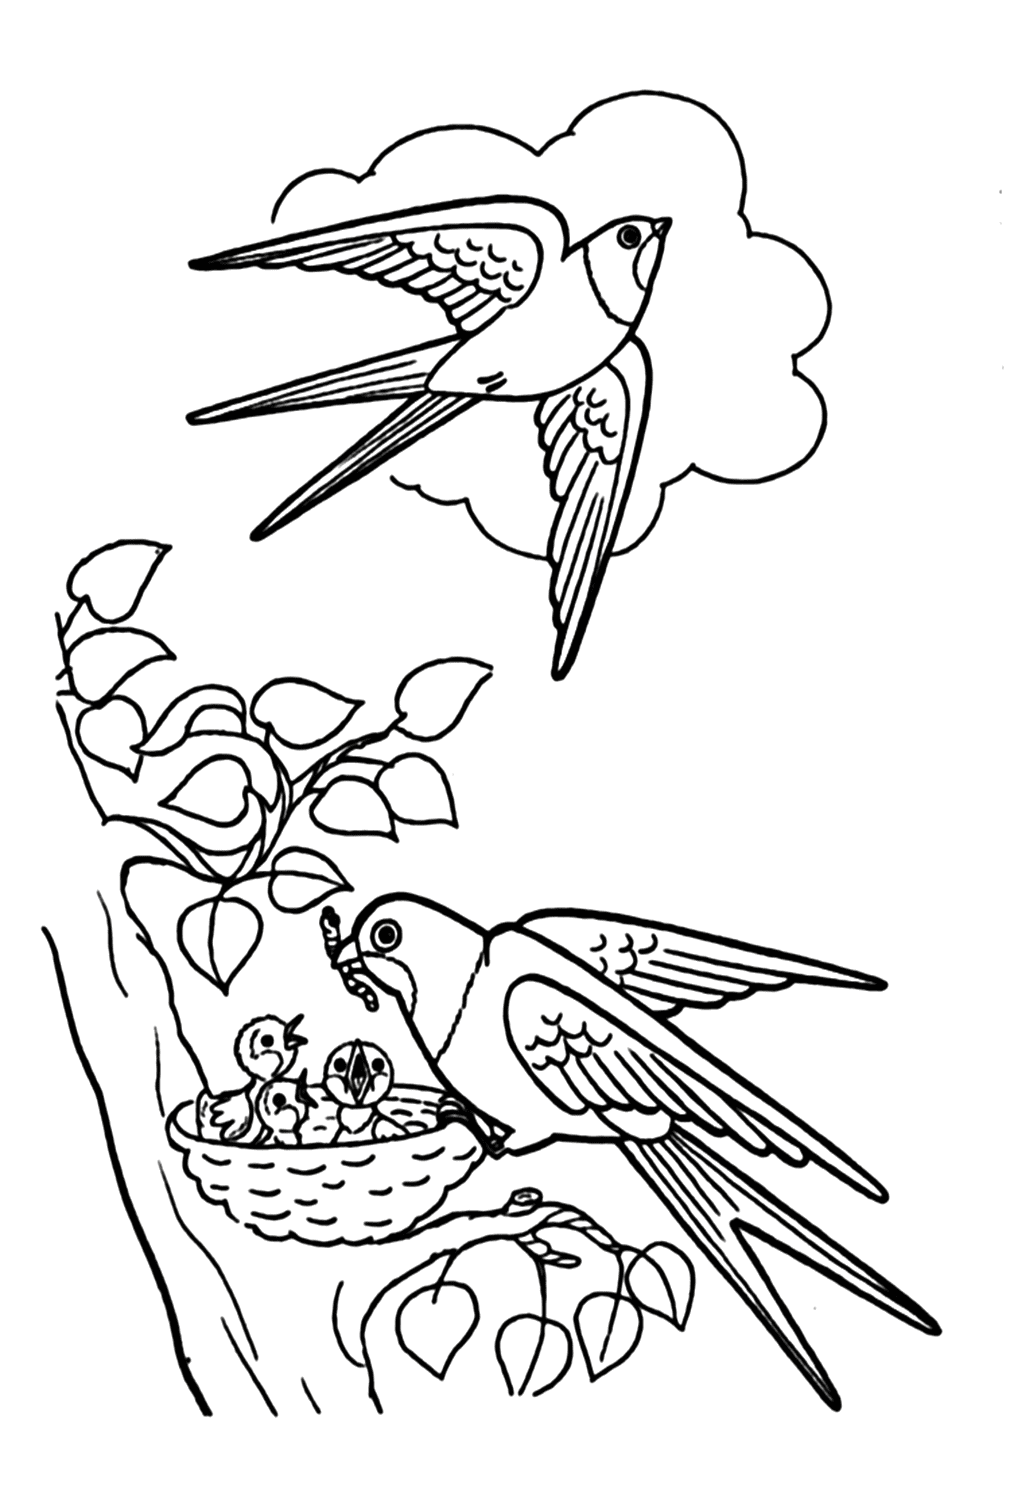 Página para colorear de pájaros golondrinas de golondrina